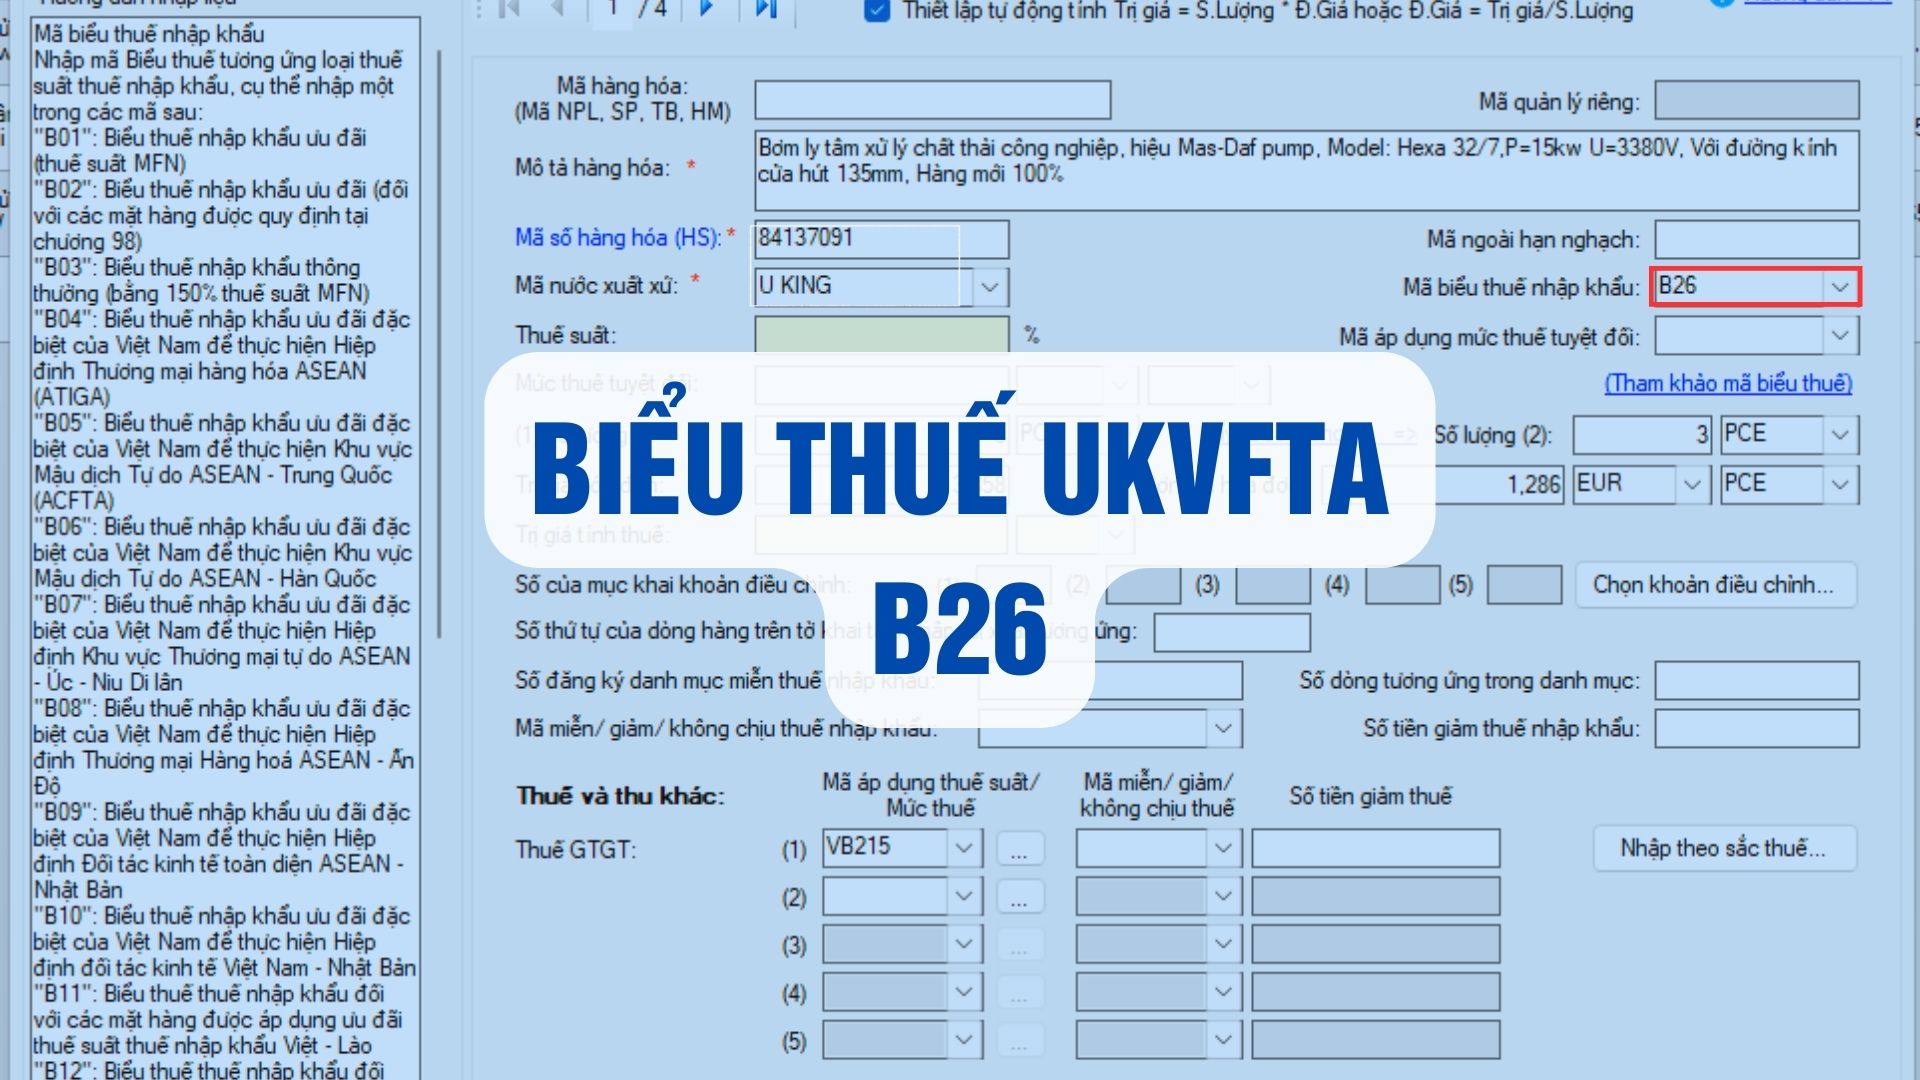 công văn 2743/TCHQ-TXNK mã biểu thuế B26 UKVFTA trên tờ khai hải quan